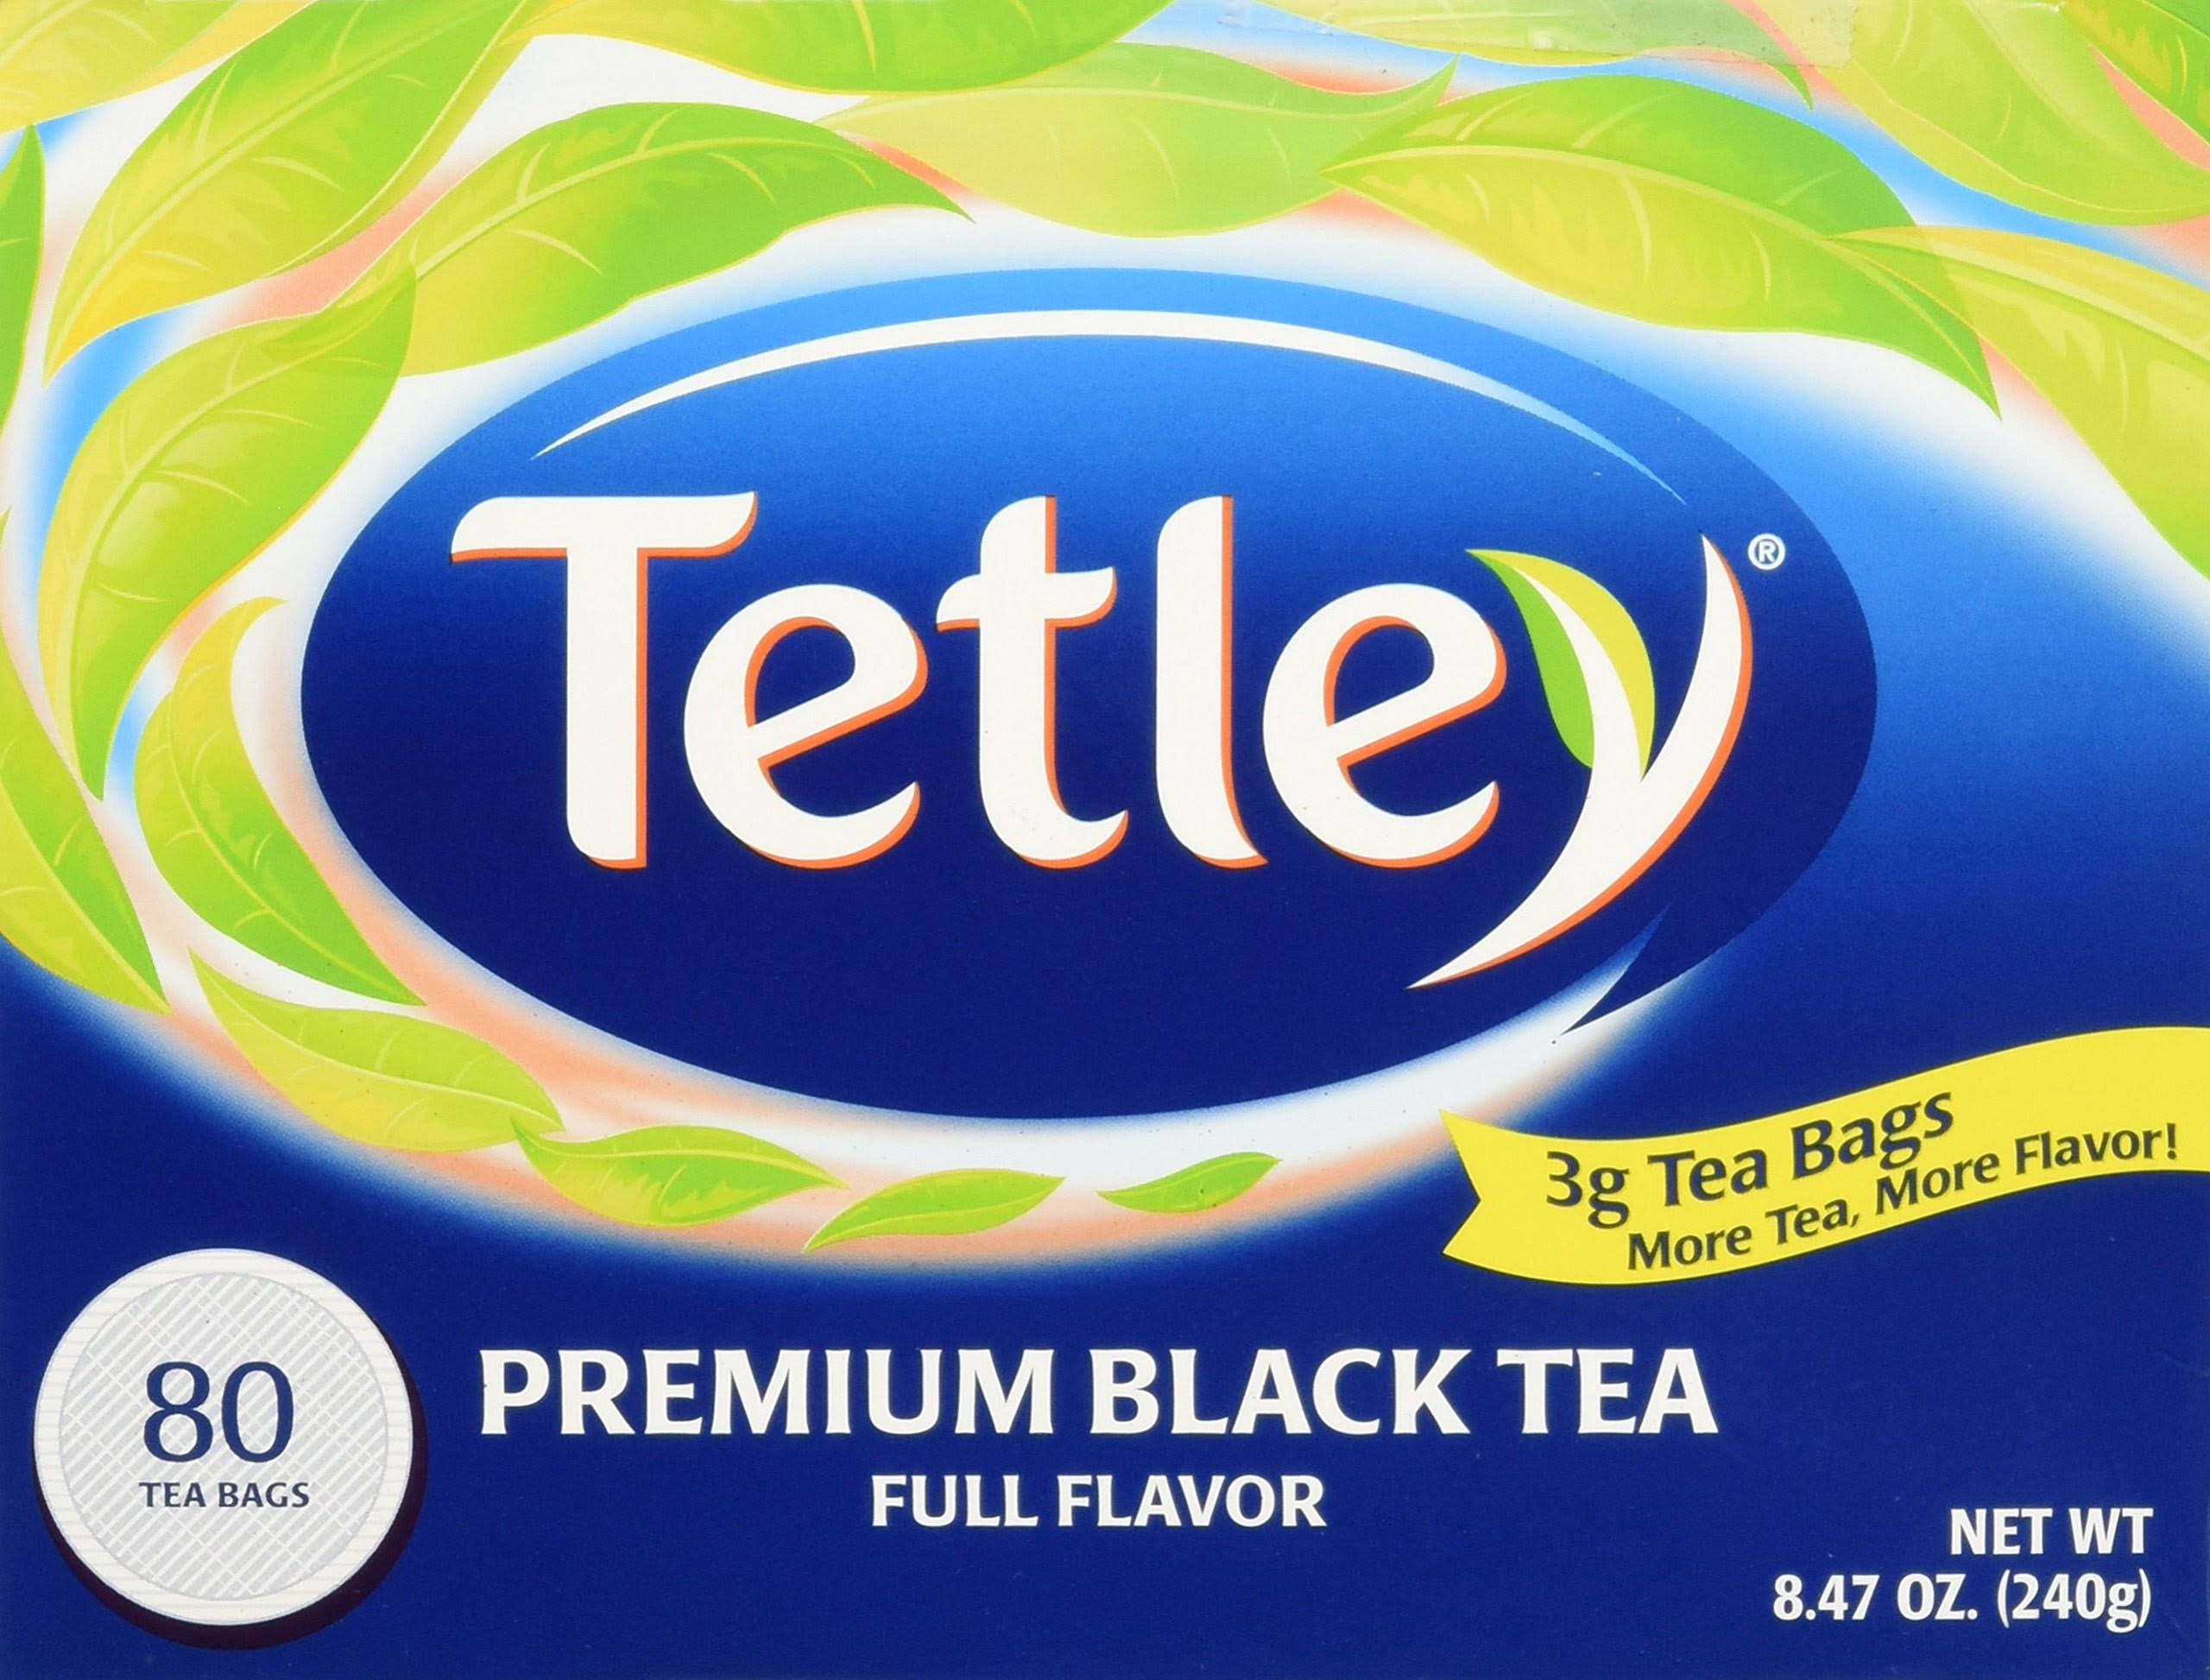 Tetley Premium Black Tea Full Flavor - 80